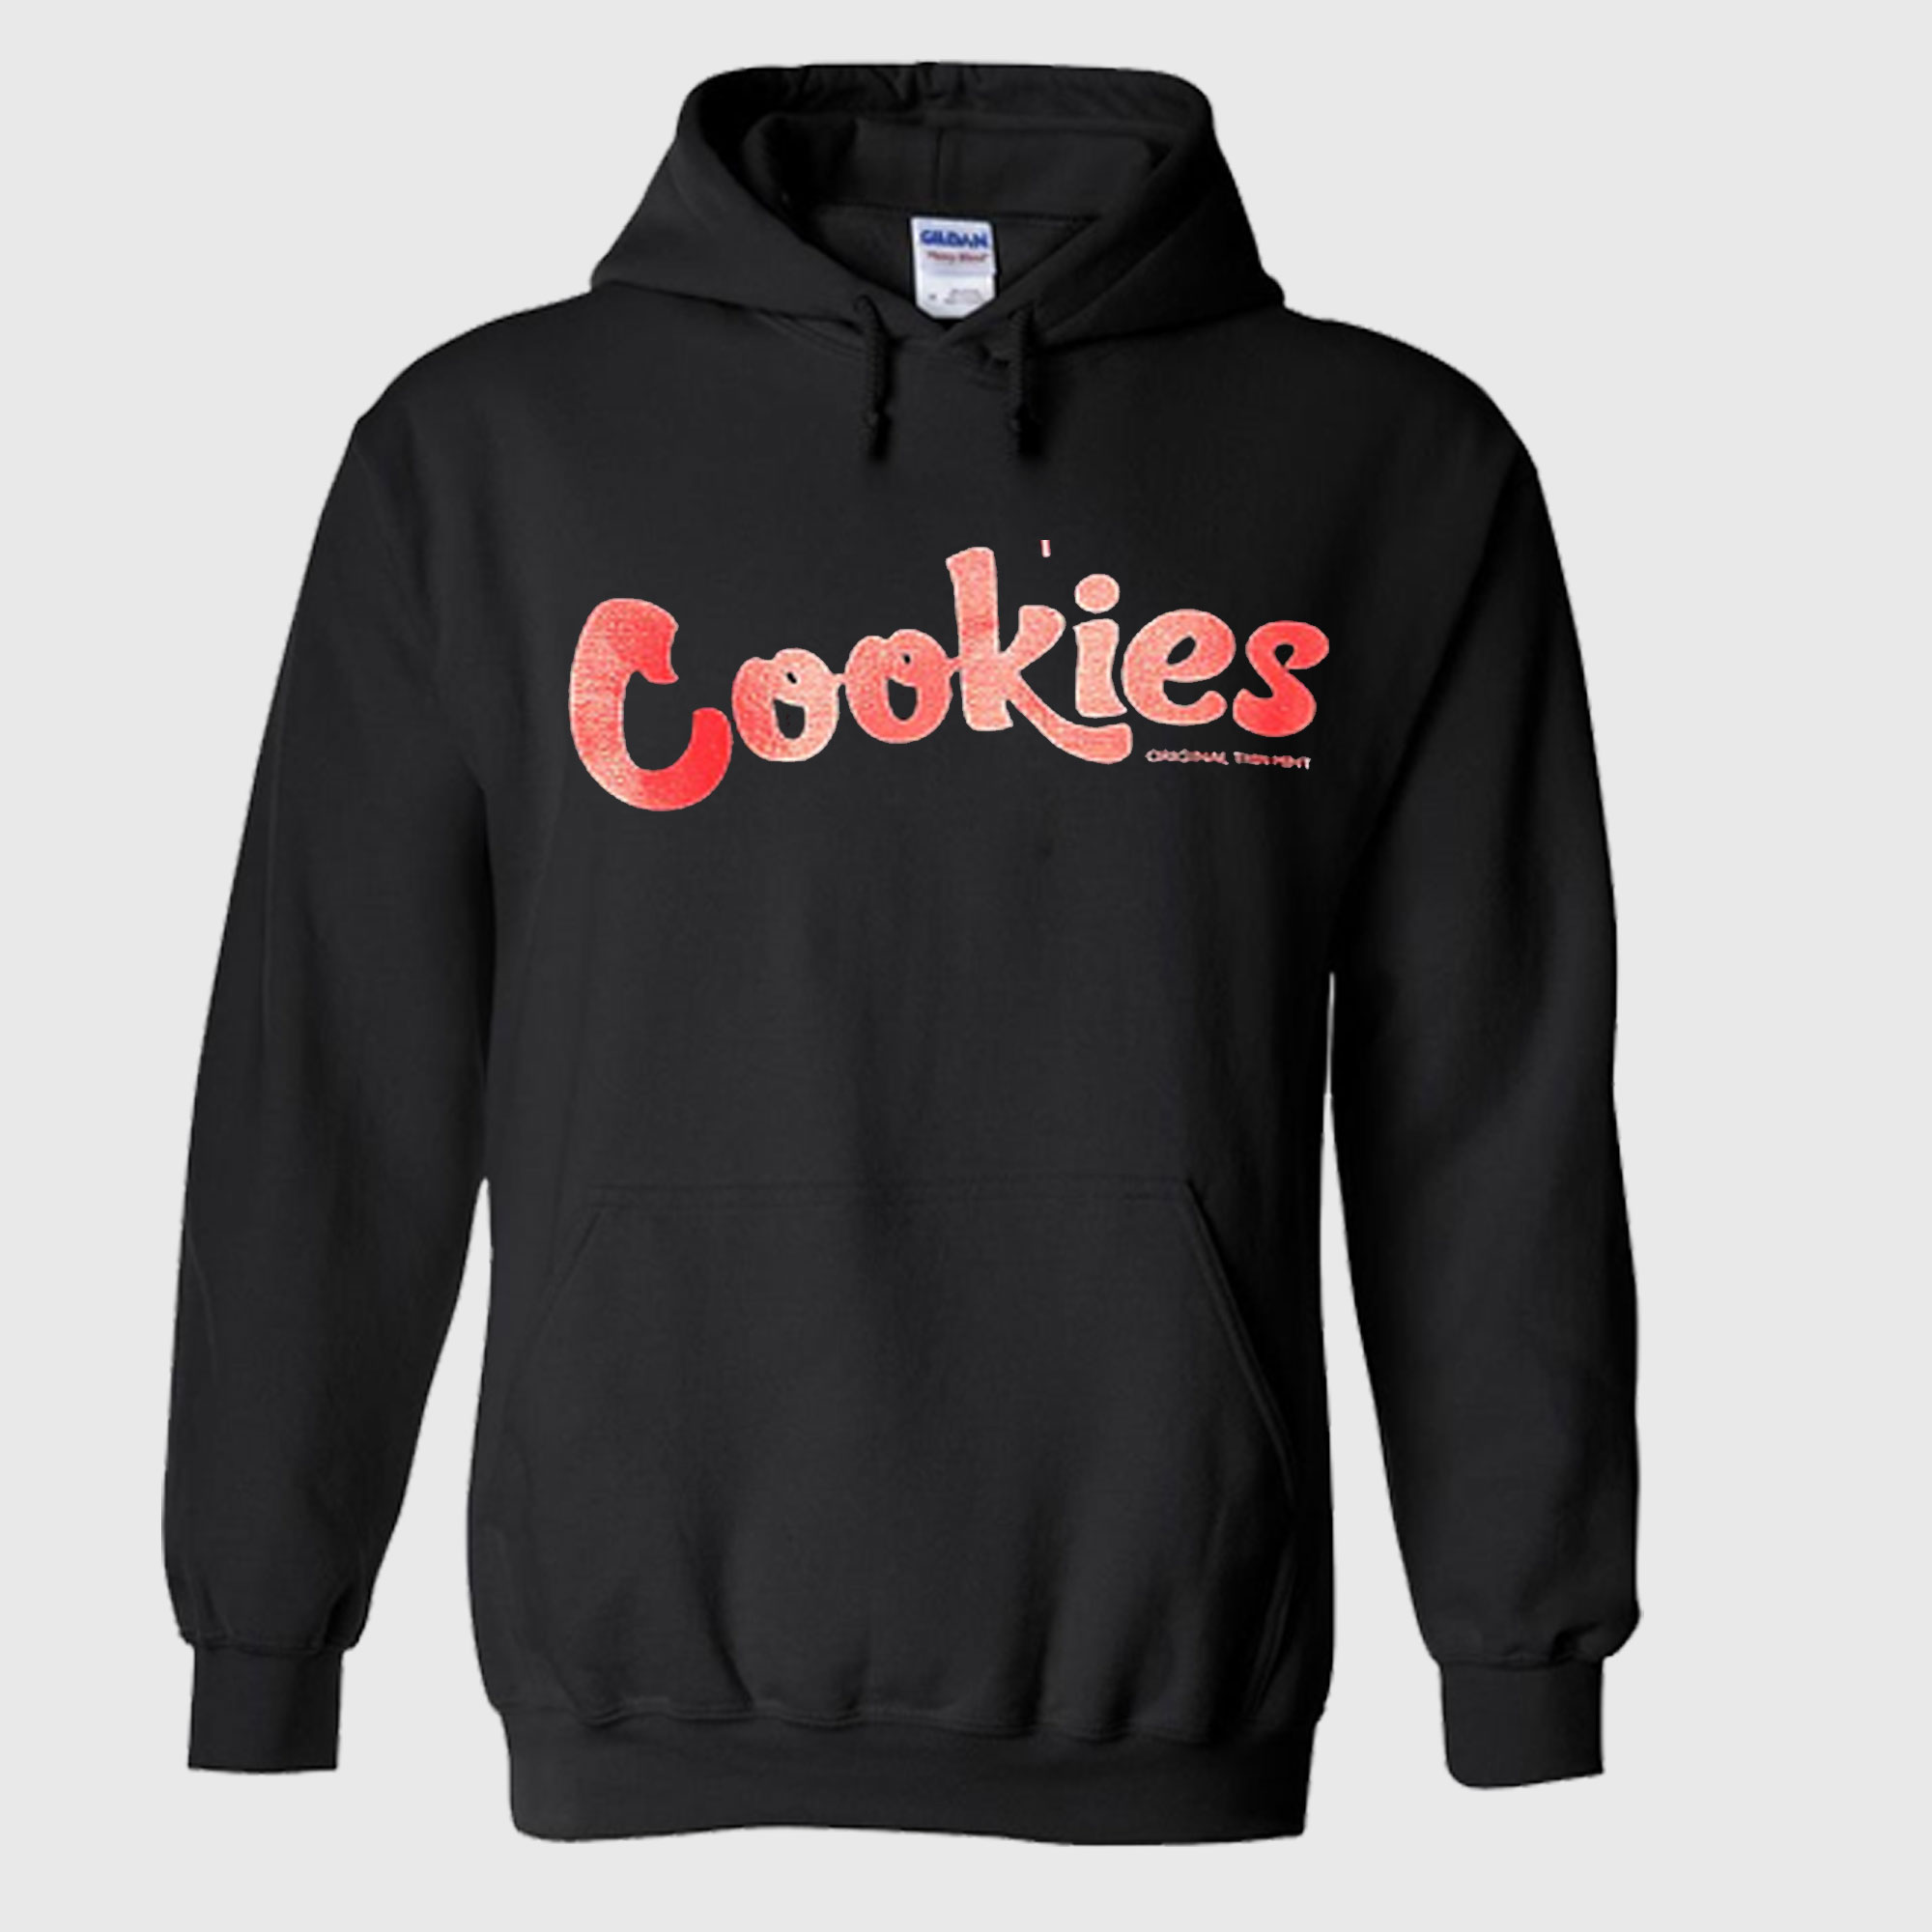 Cookies Hoodie